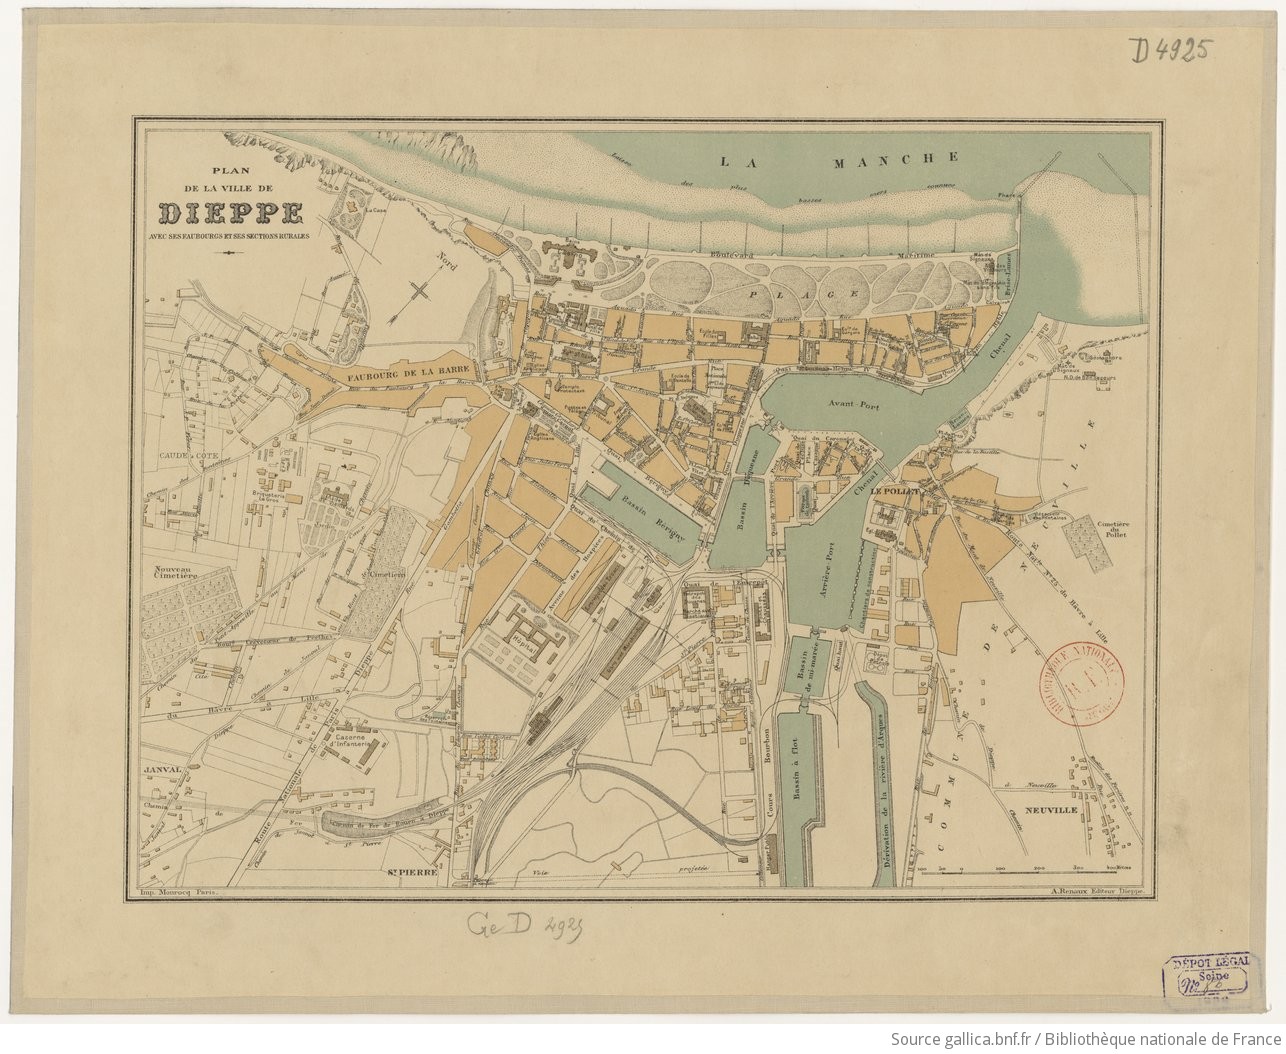 Plan de la ville de Dieppe avec ses faubourgs et ses sections rurales